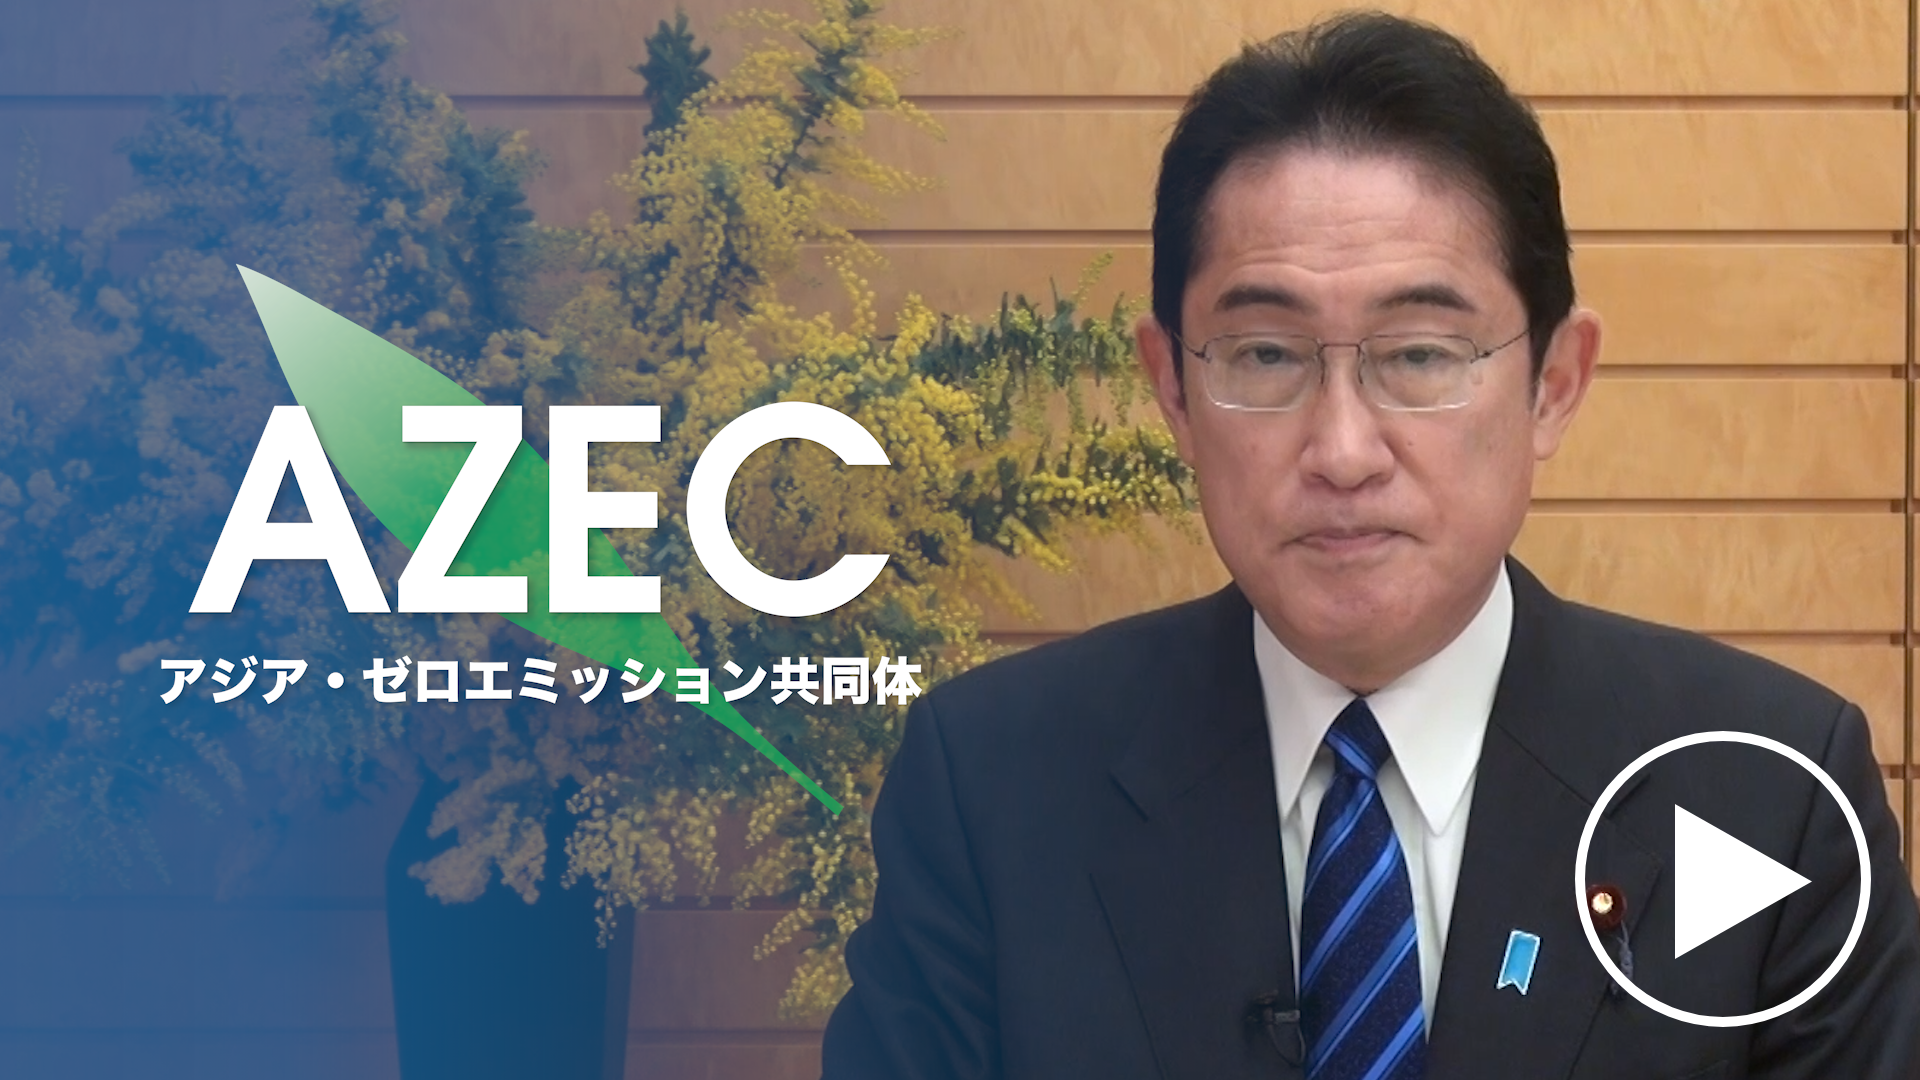 AZEC アジア・ゼロエミッション共同体